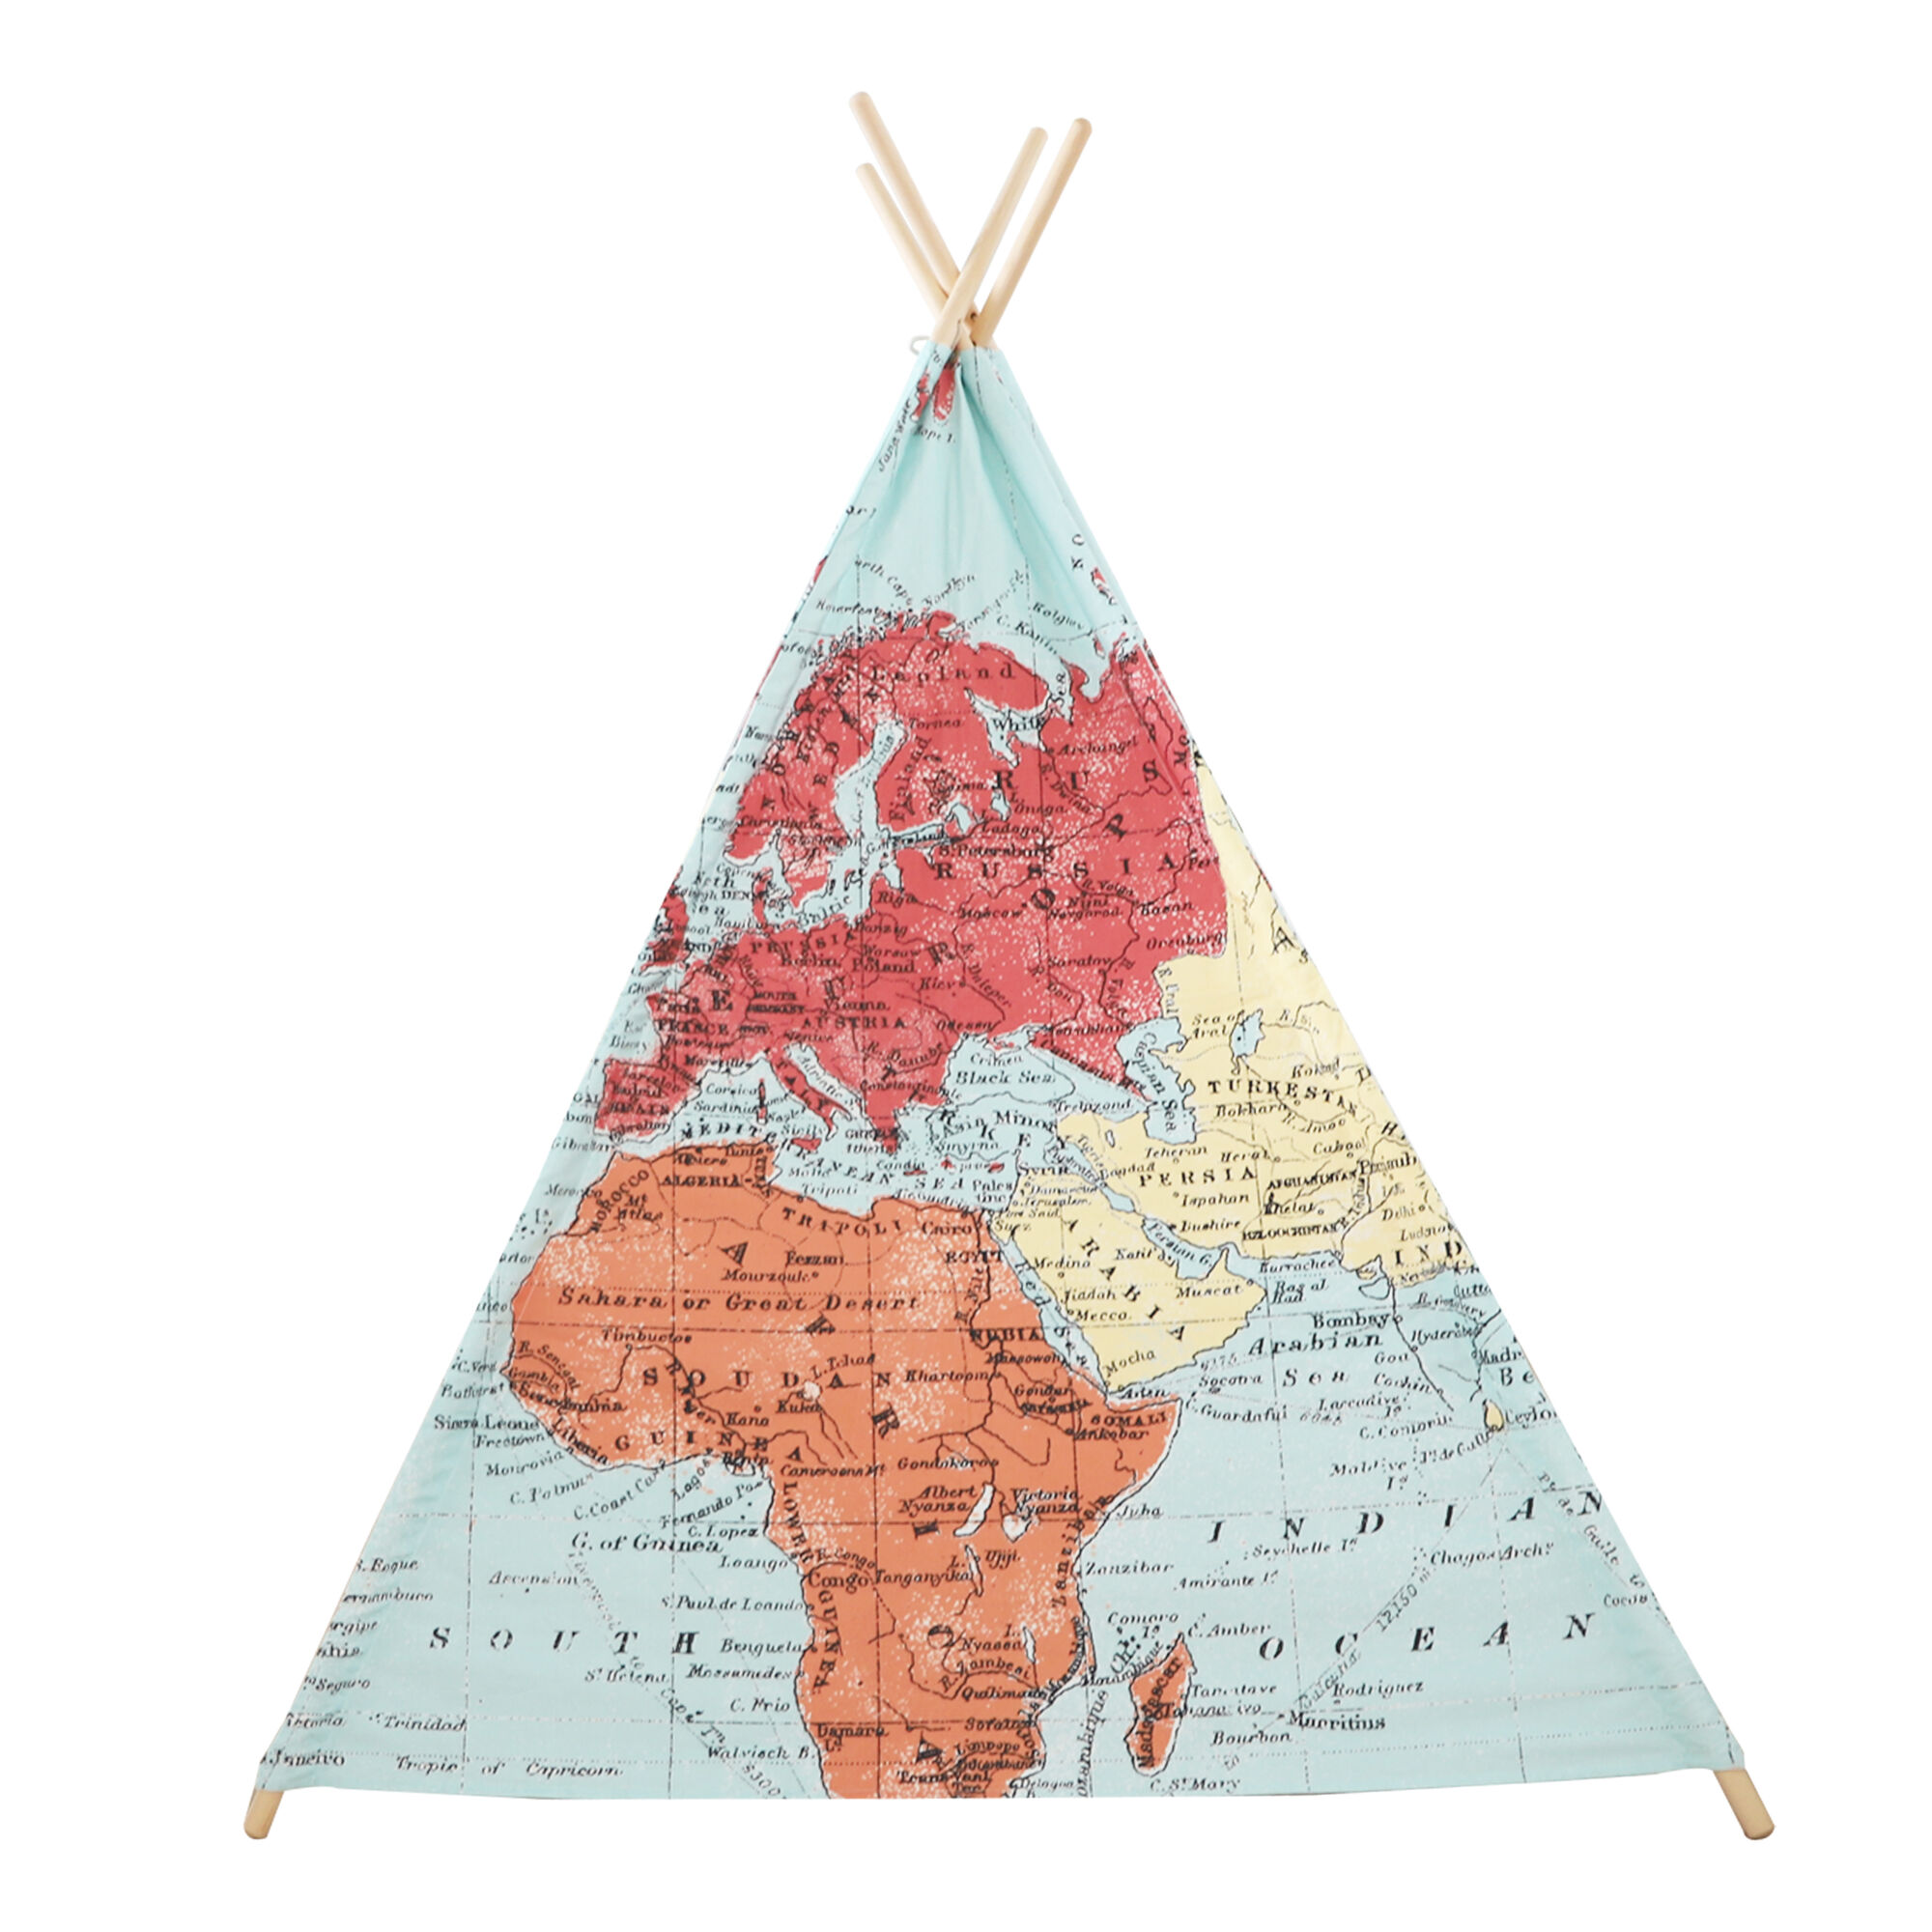 Sunny Tipi Zelt mit Weltkarte - Mehrfarbig